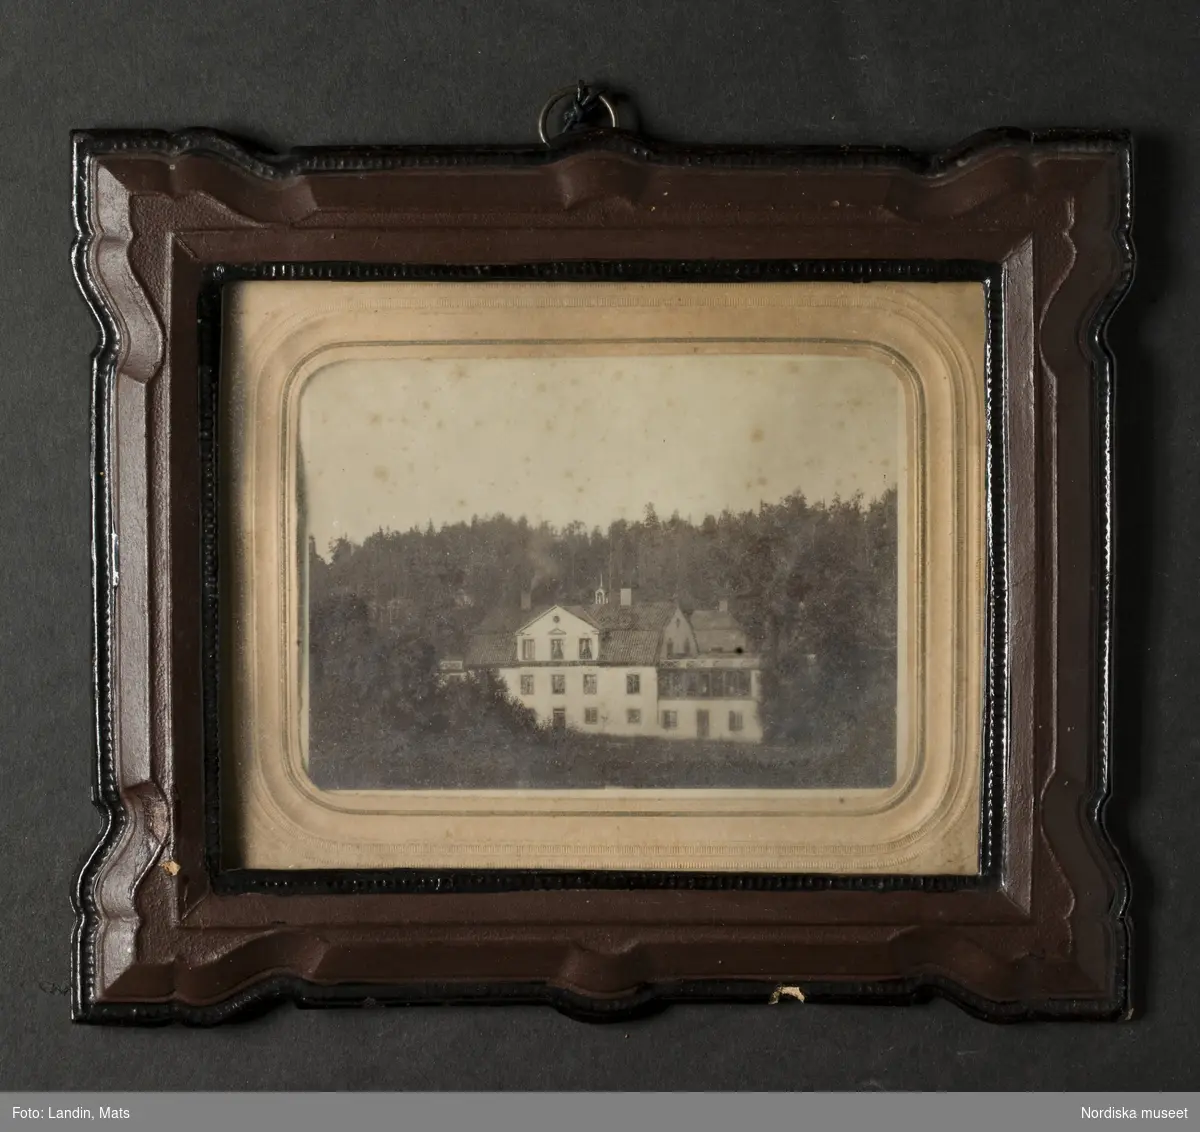 Fotografi i ram. Föreställer Ehrendals mangårdsbyggnad, Ehrendal, Frustuna socken, Södermanland. Ca. 1860-tal.
Nordiska museet inv.nr 210013.